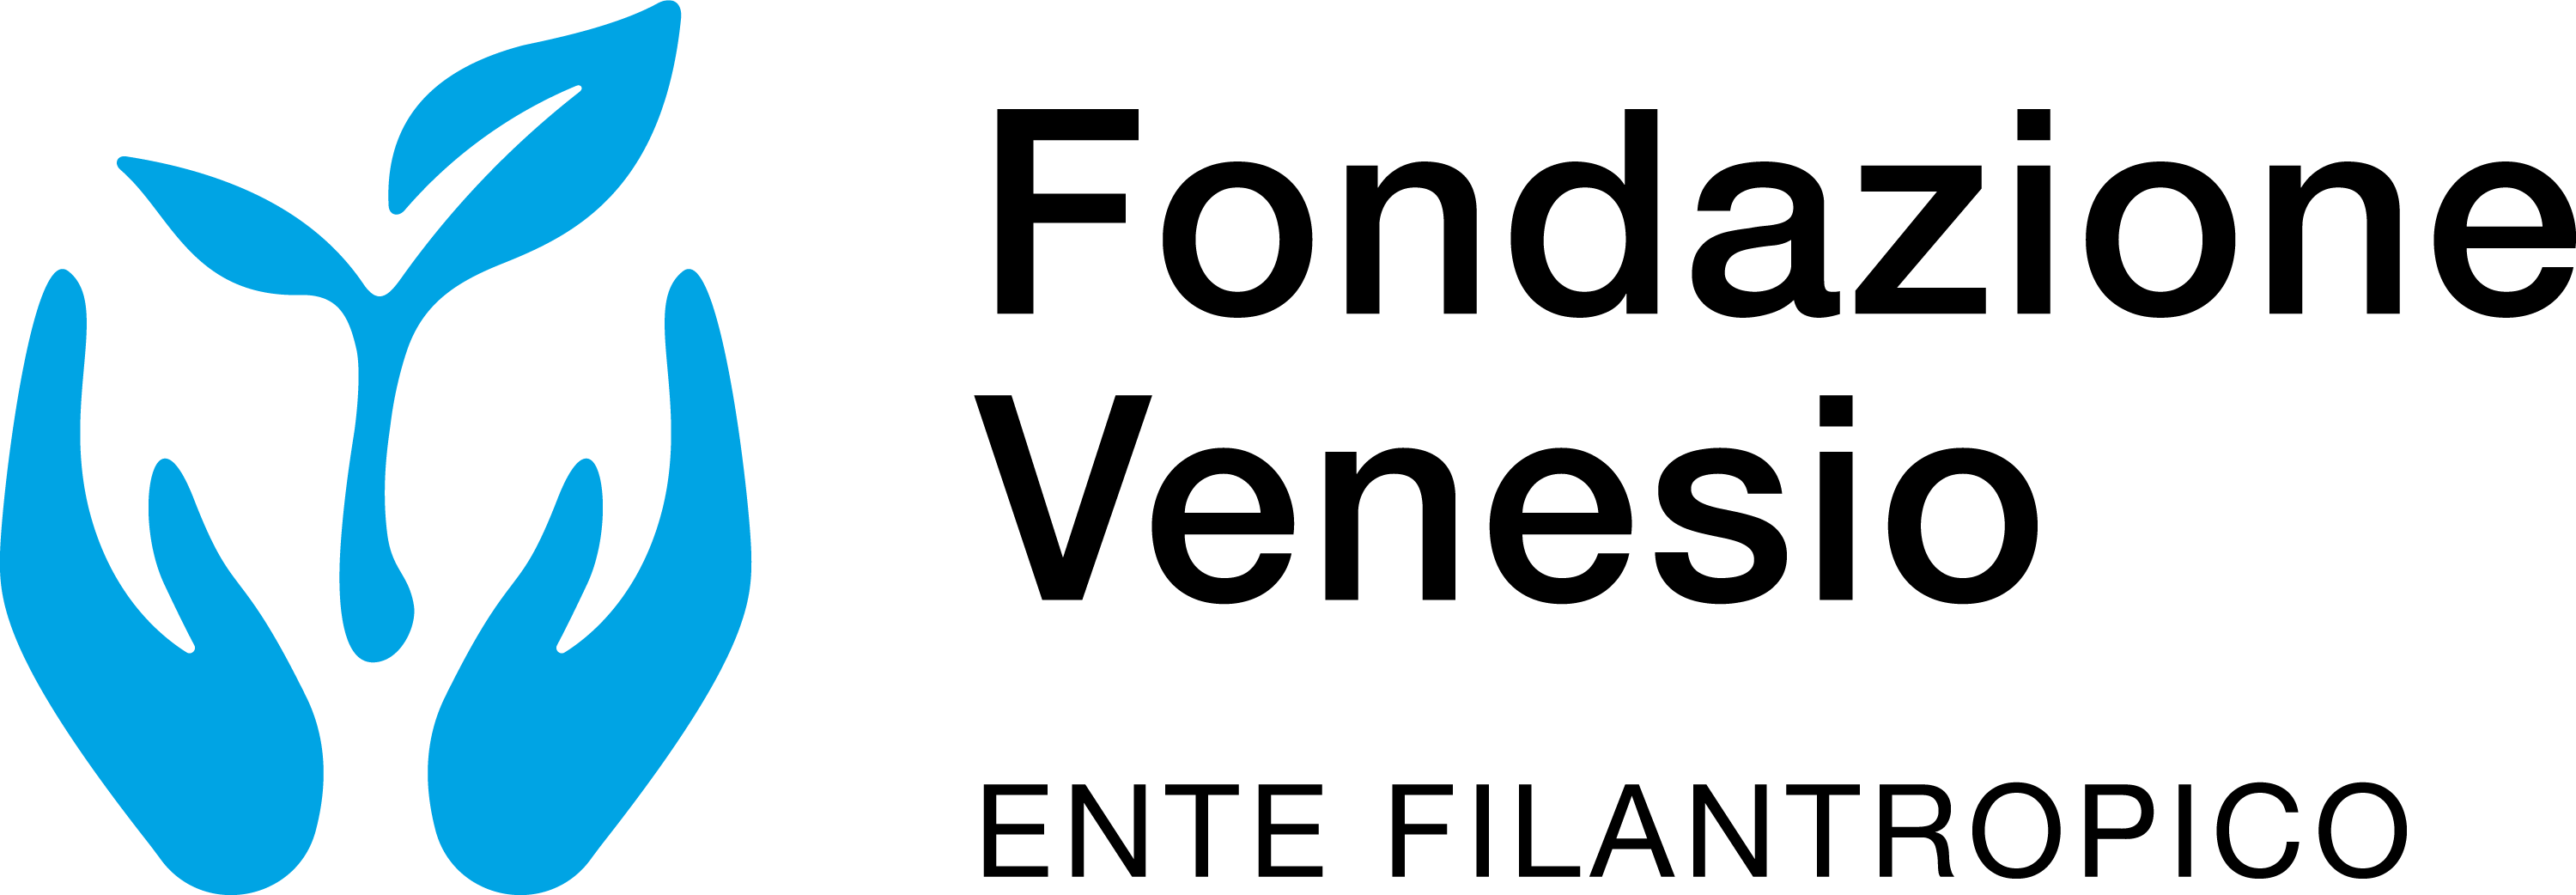 logo Fondazione Venesio